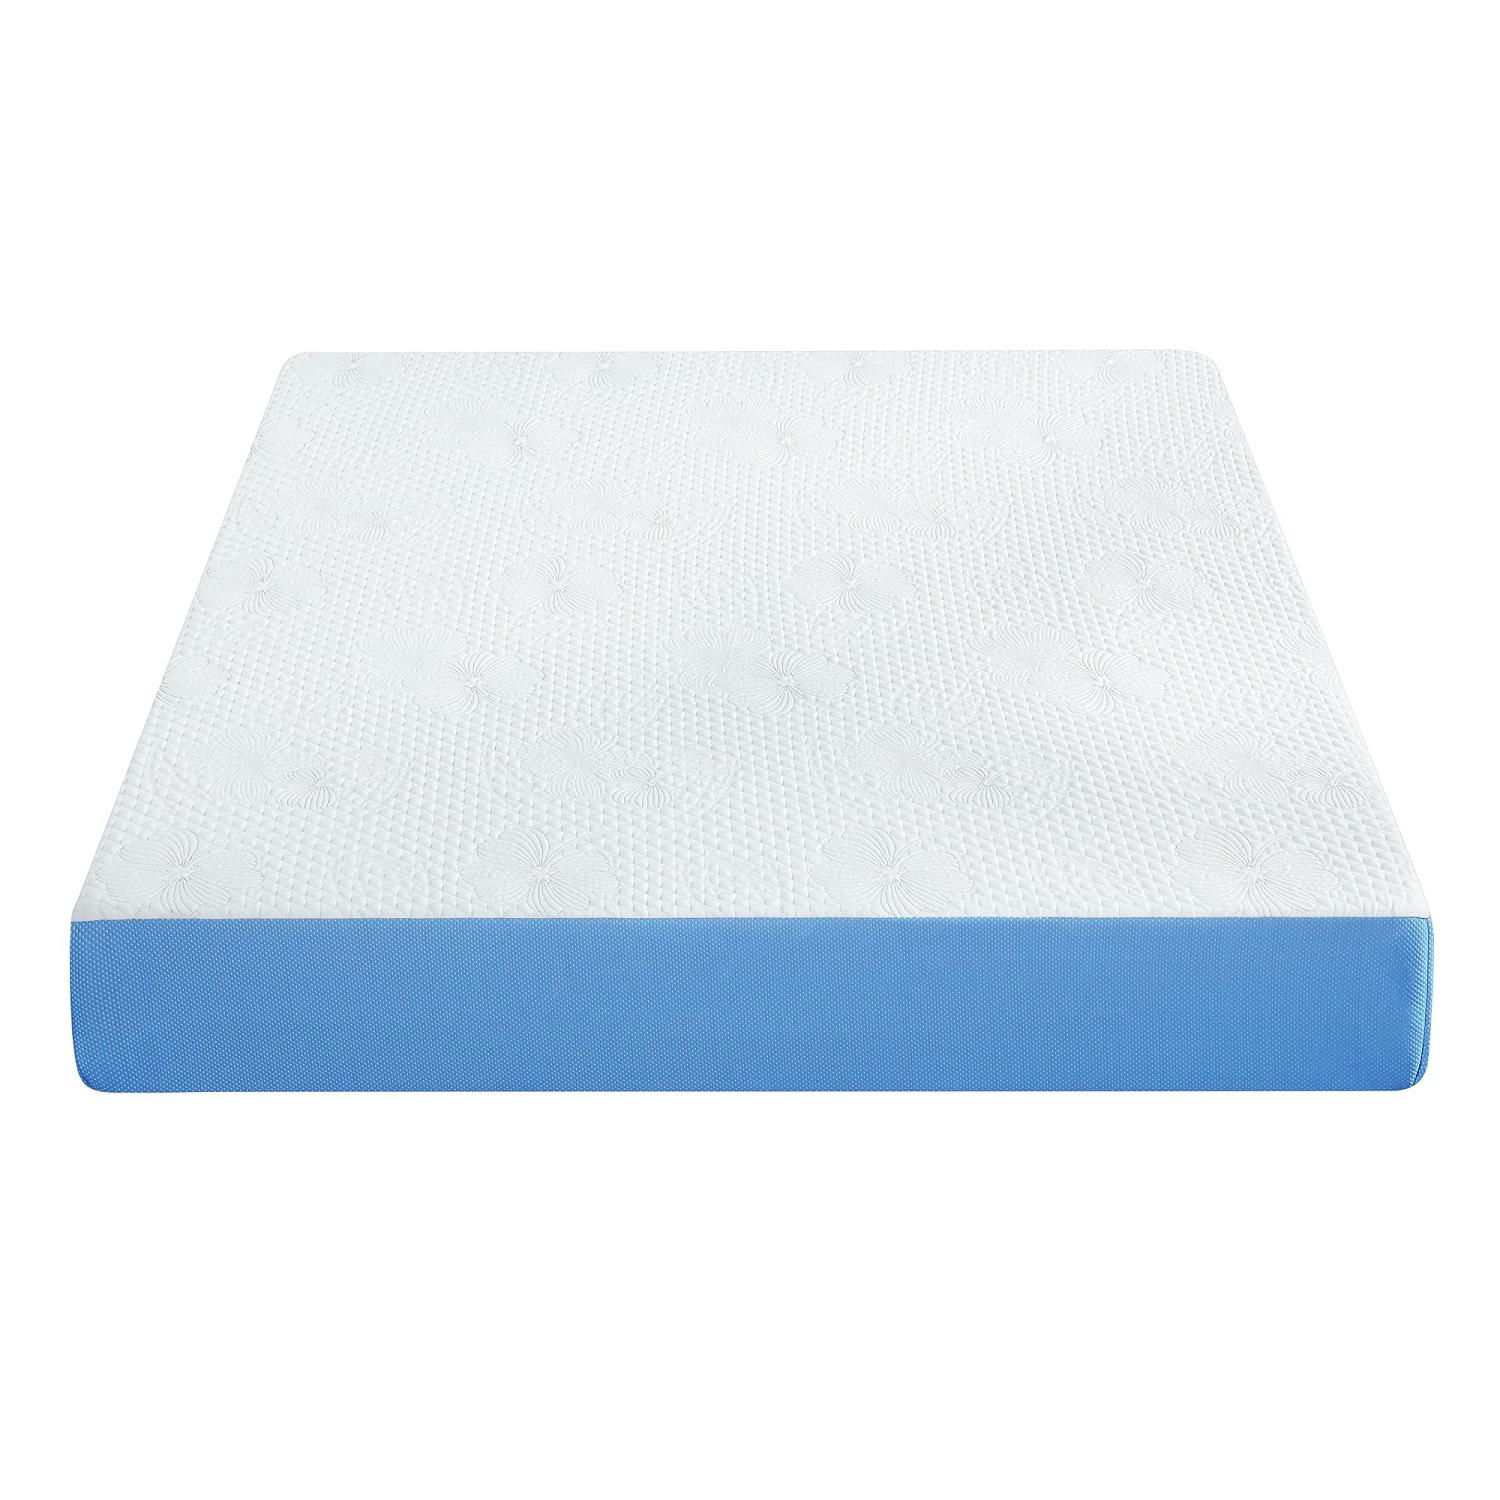 Soft Foam Sleep Rest Mattress Pocket Innerspring Natural Latex Sponge Mattress